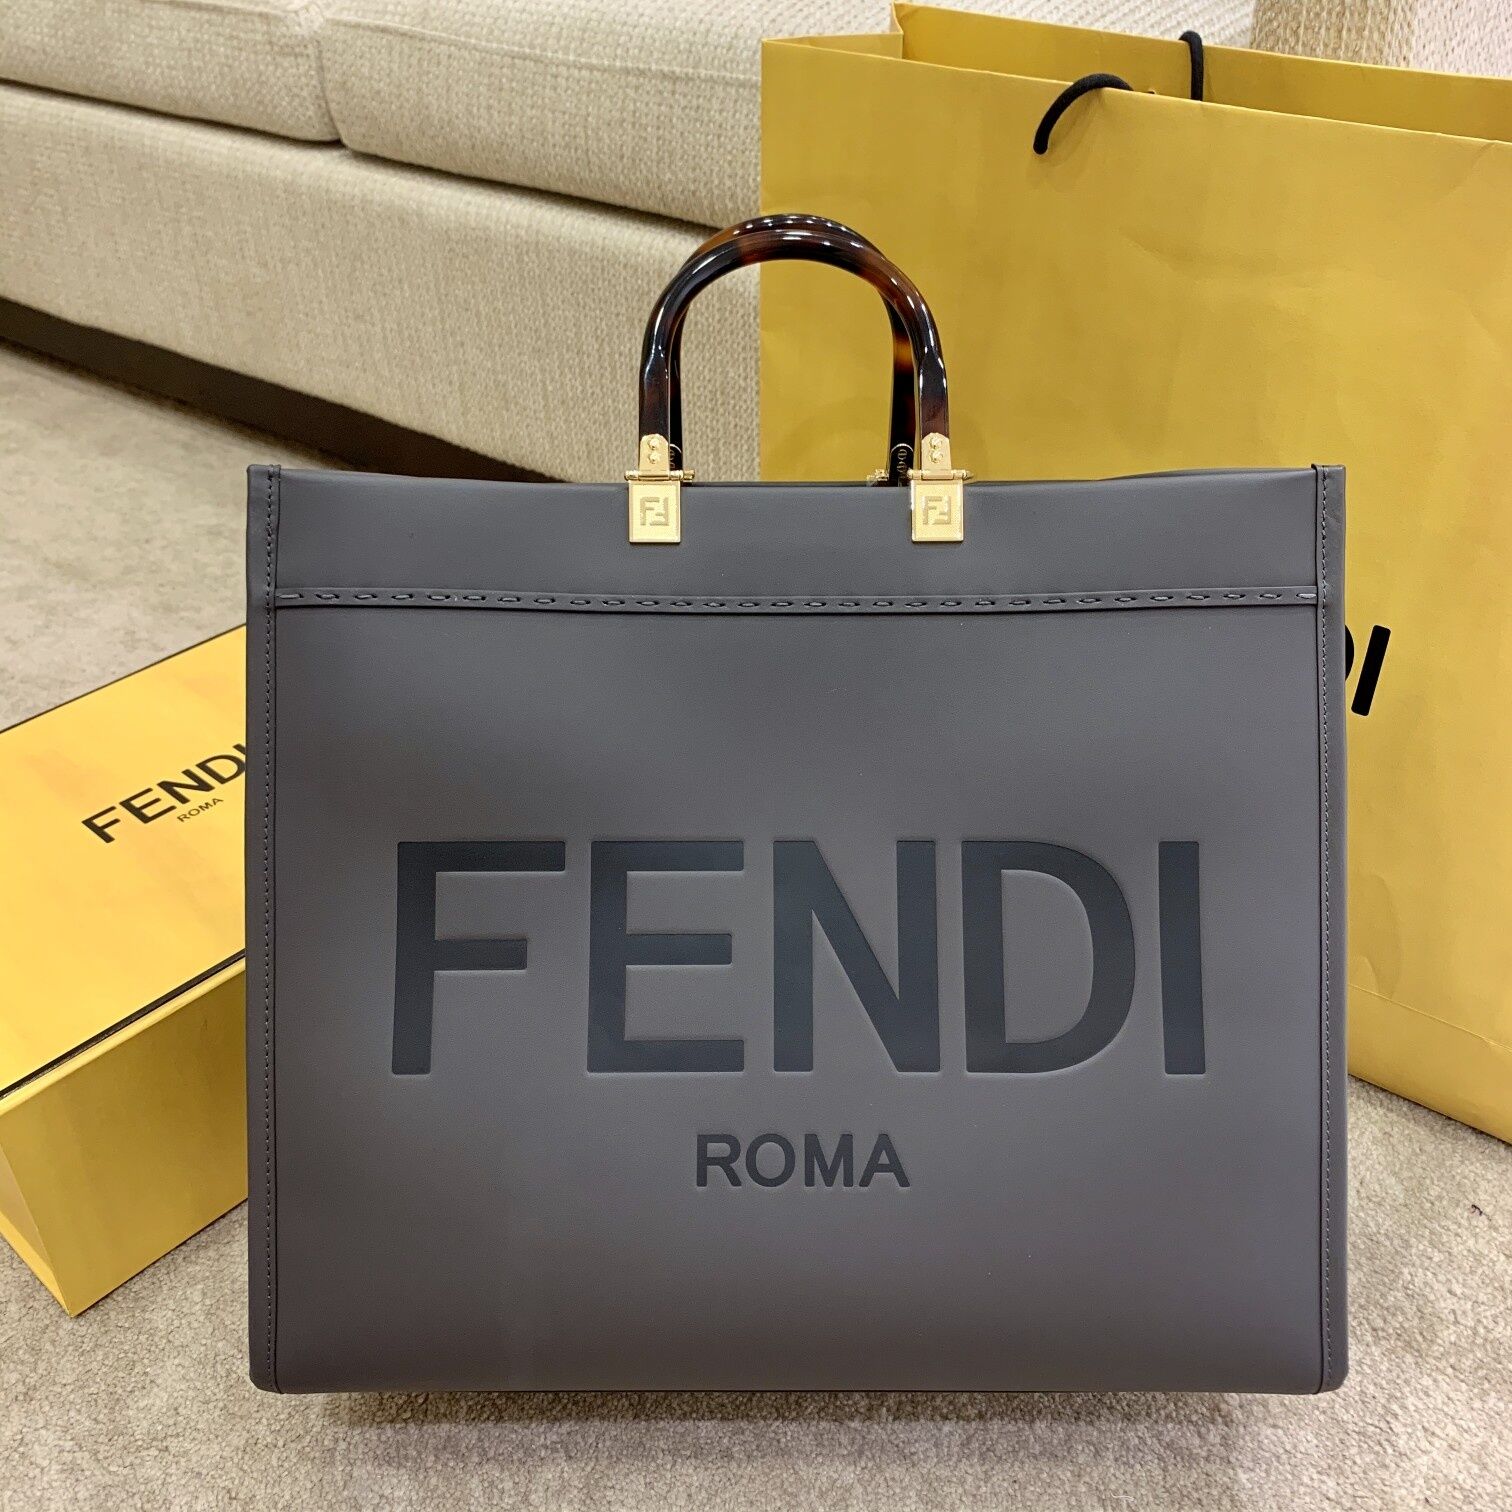 Fendi Leather Shopper Tote Bag Gray 2021 - Click Image to Close